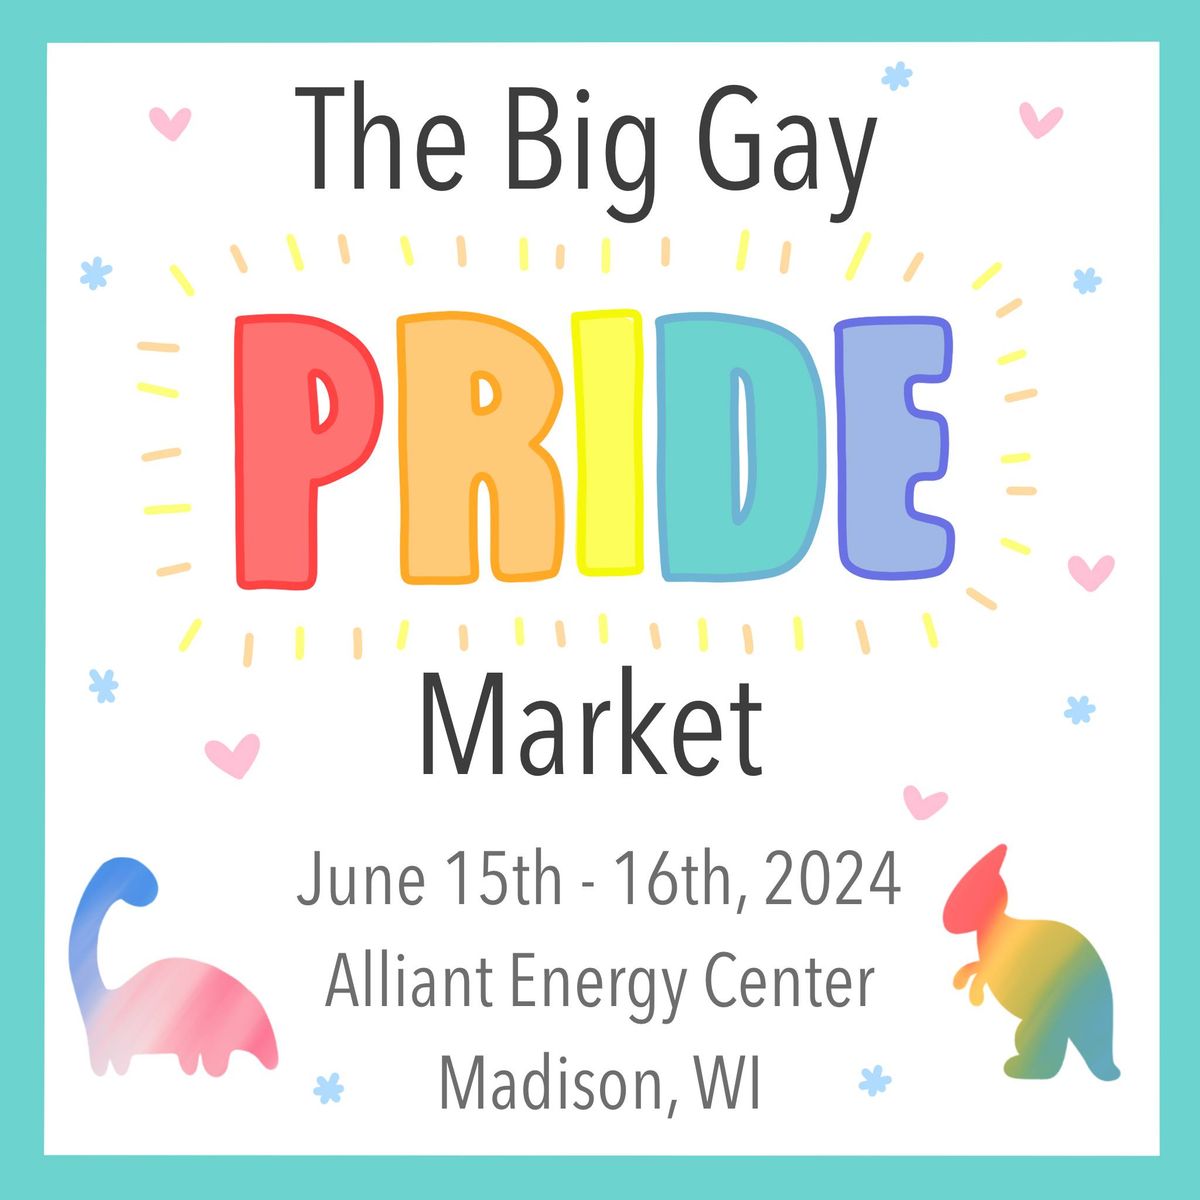 The Big Gay PRIDE Market!